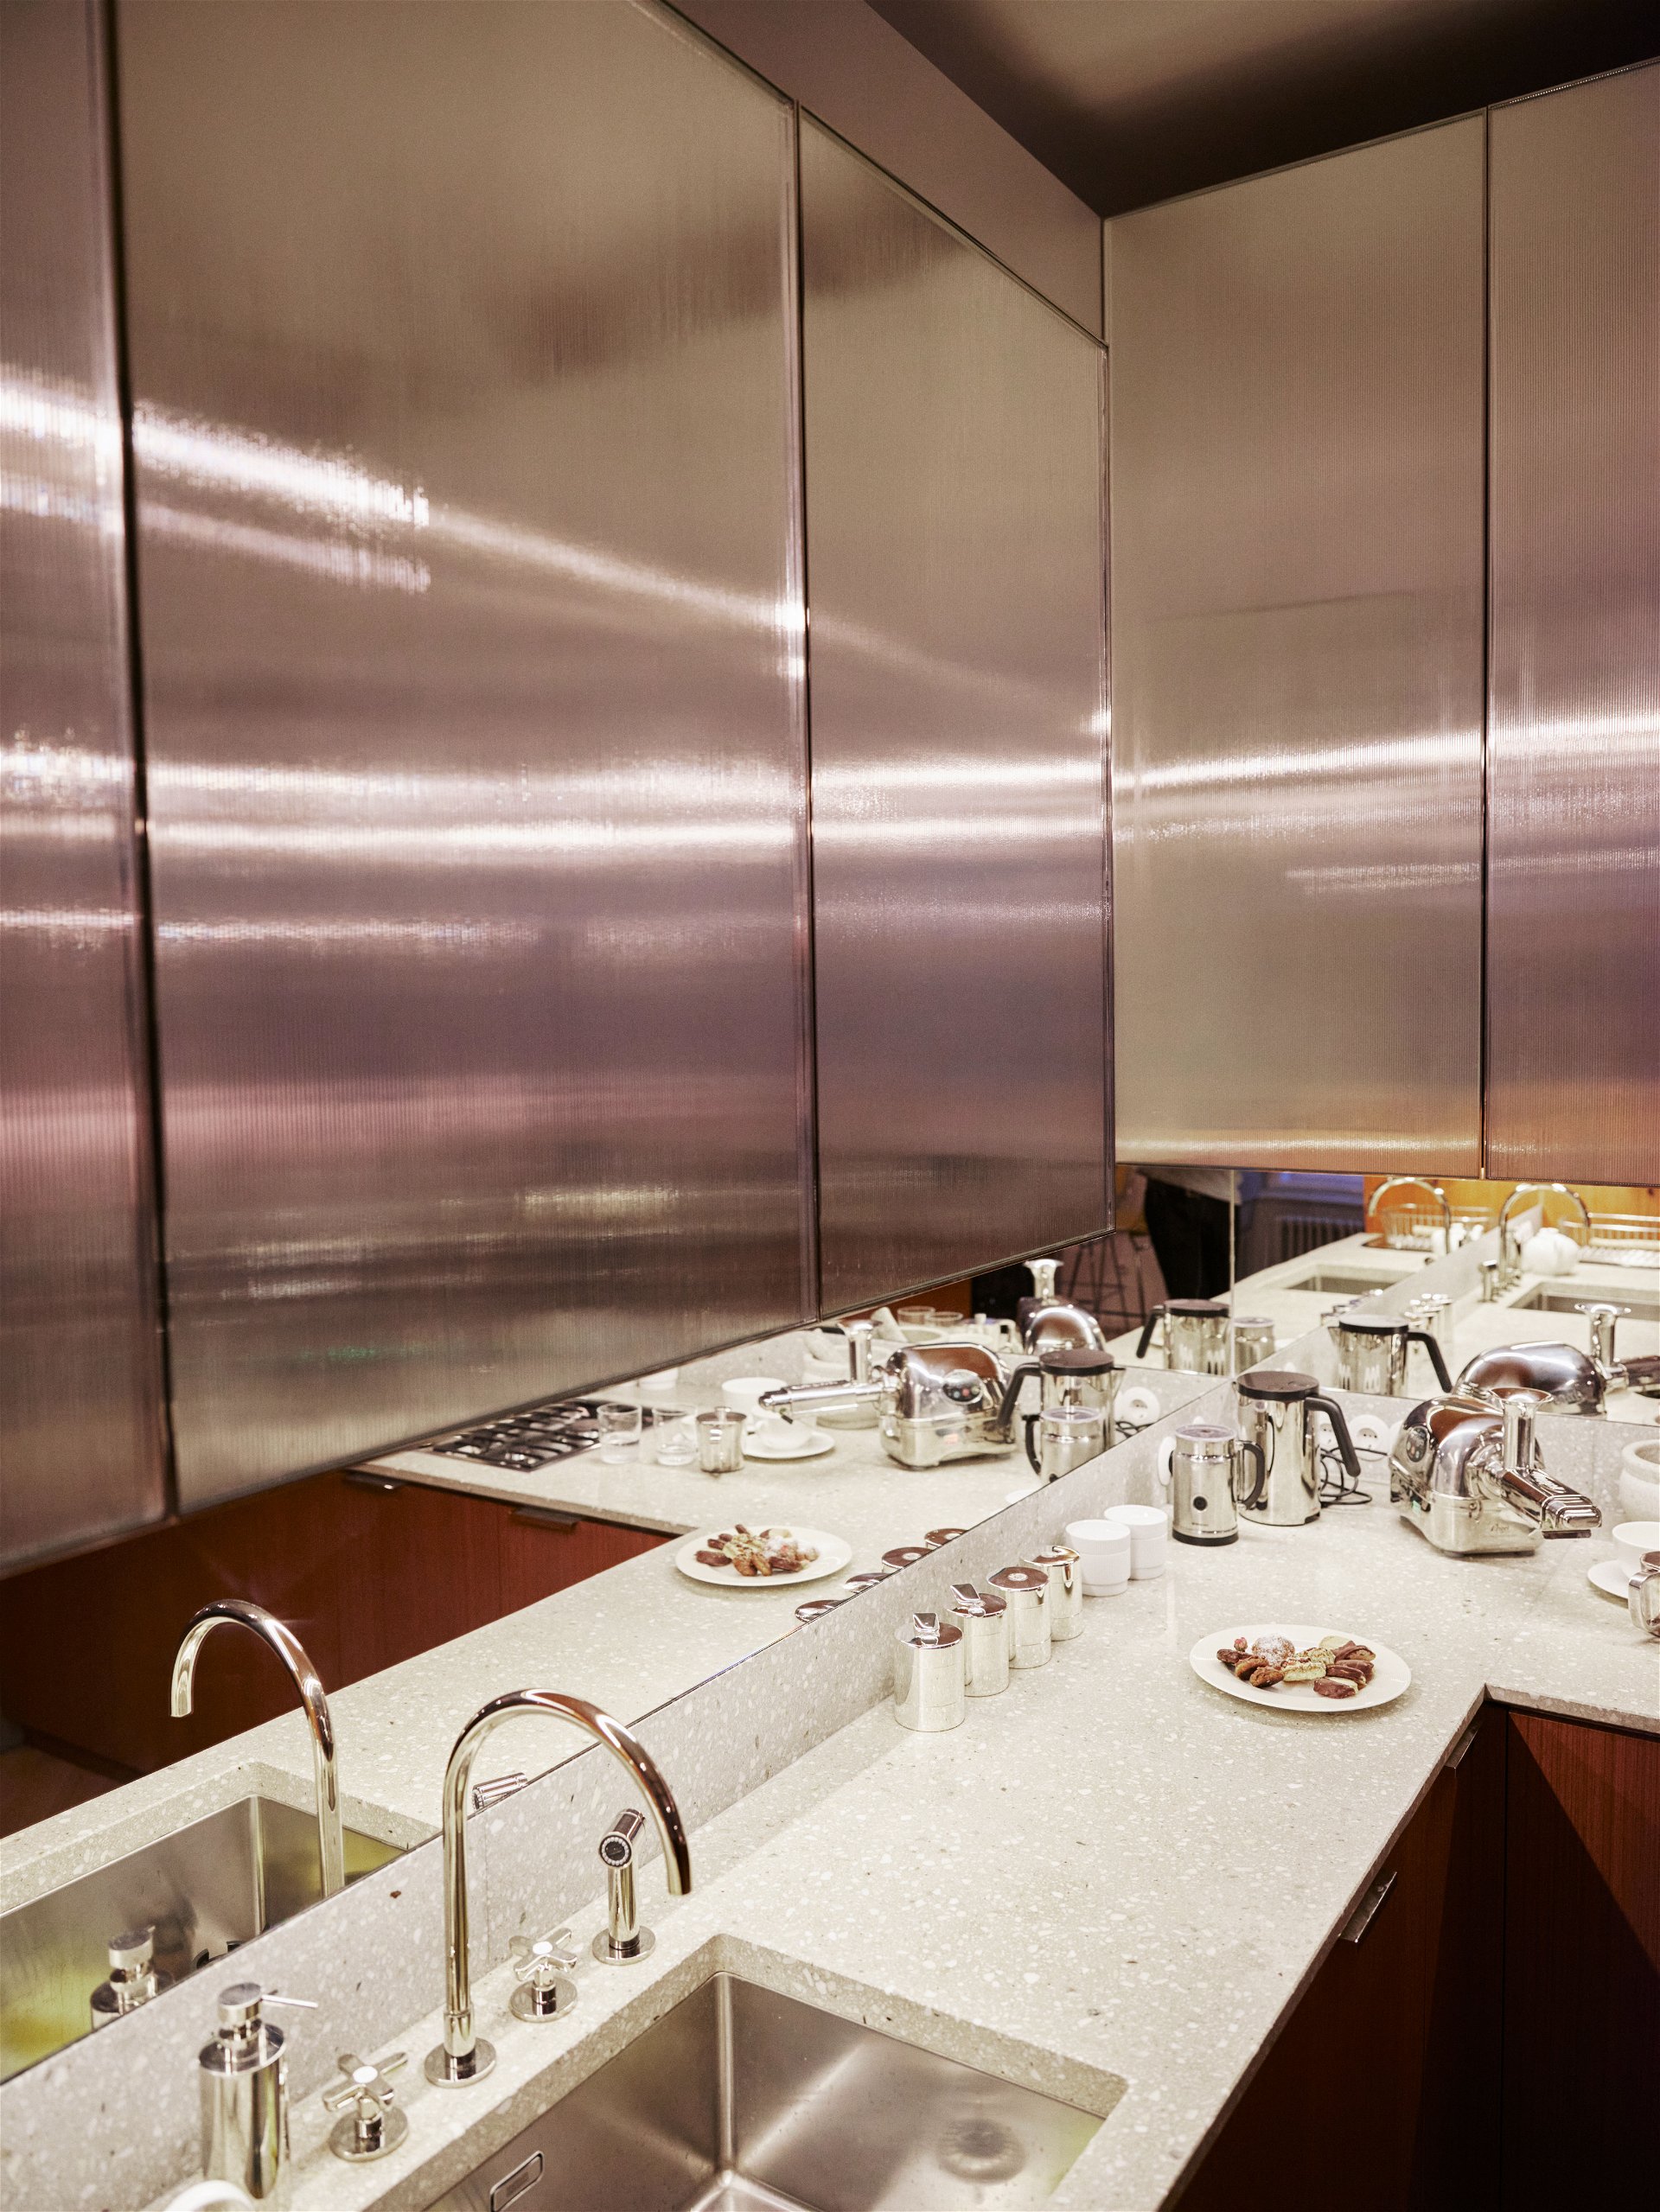 Wohnküche: Materialien und Design in der Küche verschmelzen mit dem restlichen Wohnraum. Die doppelt verglasten Oberschränke haben einen seidigen Schimmer und reflektieren das Licht.